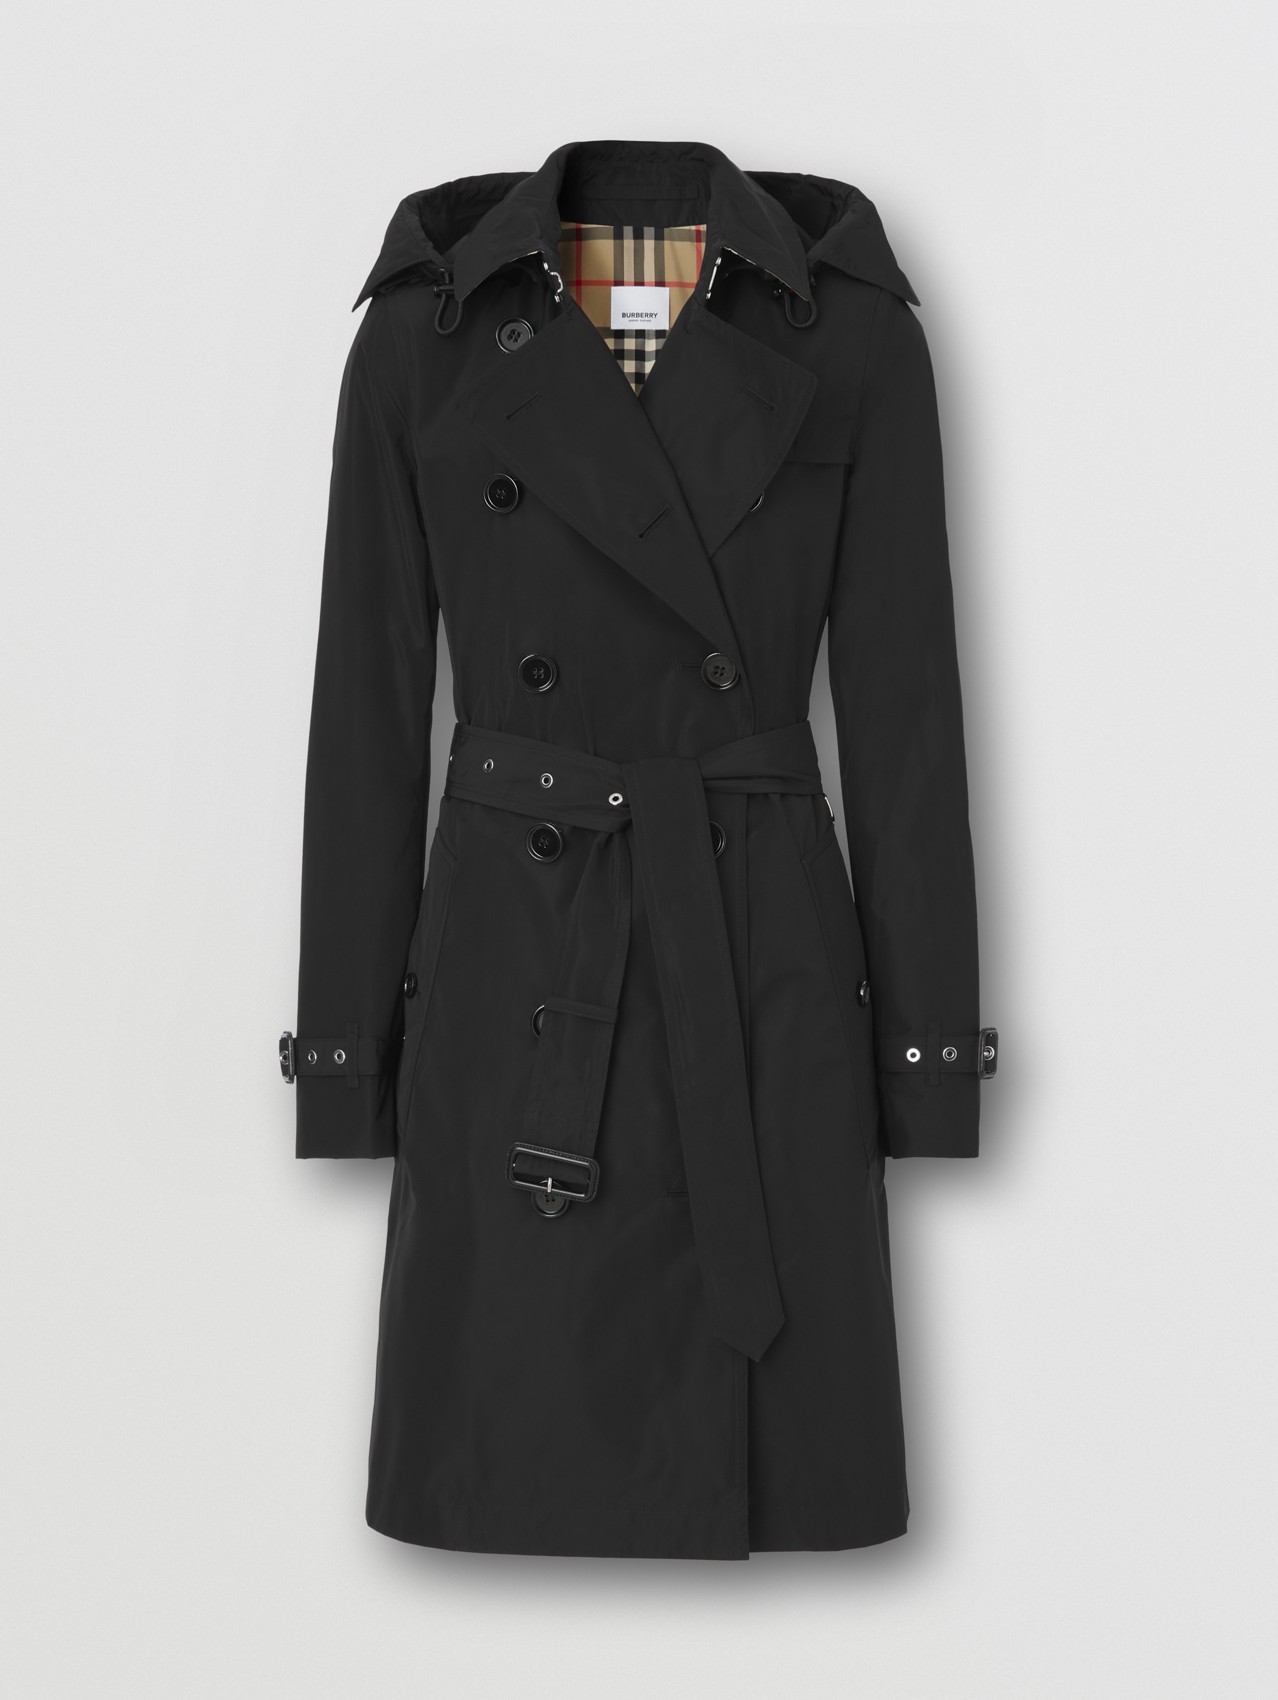 White 42                  EU WOMEN FASHION Coats Long coat Casual Osley Long coat discount 62% 